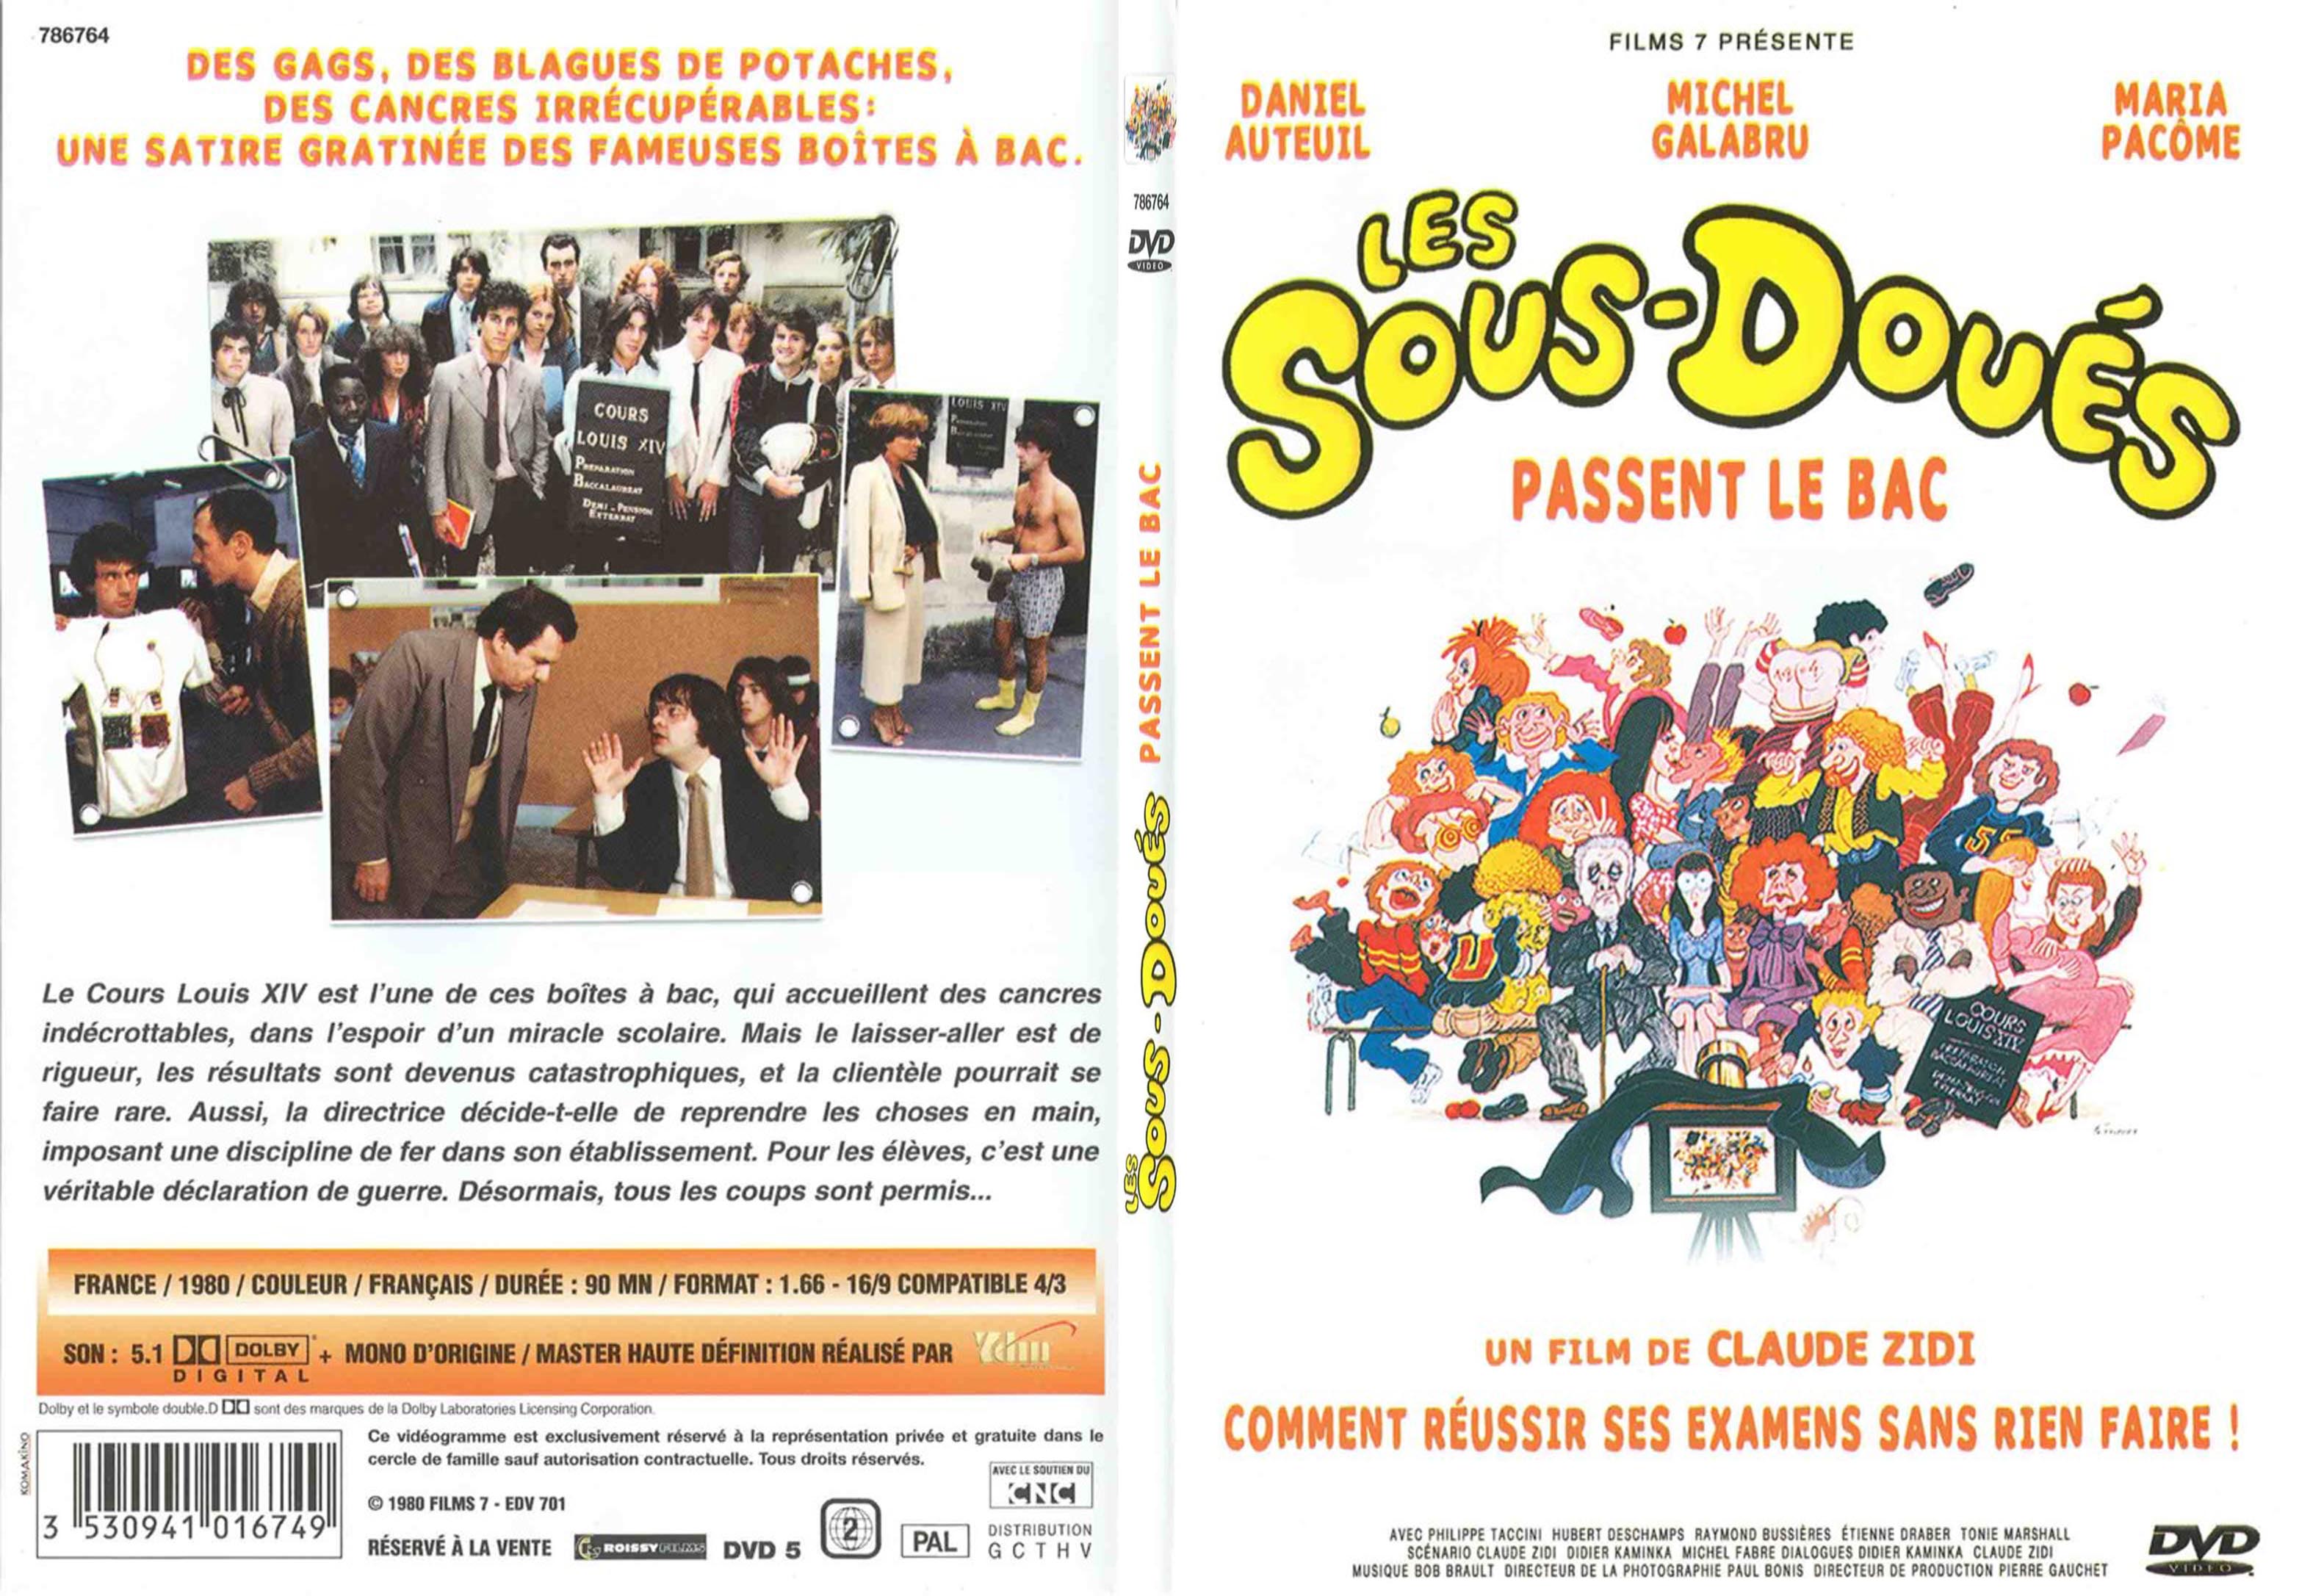 Jaquette DVD Les sous dous passent le bac - SLIM